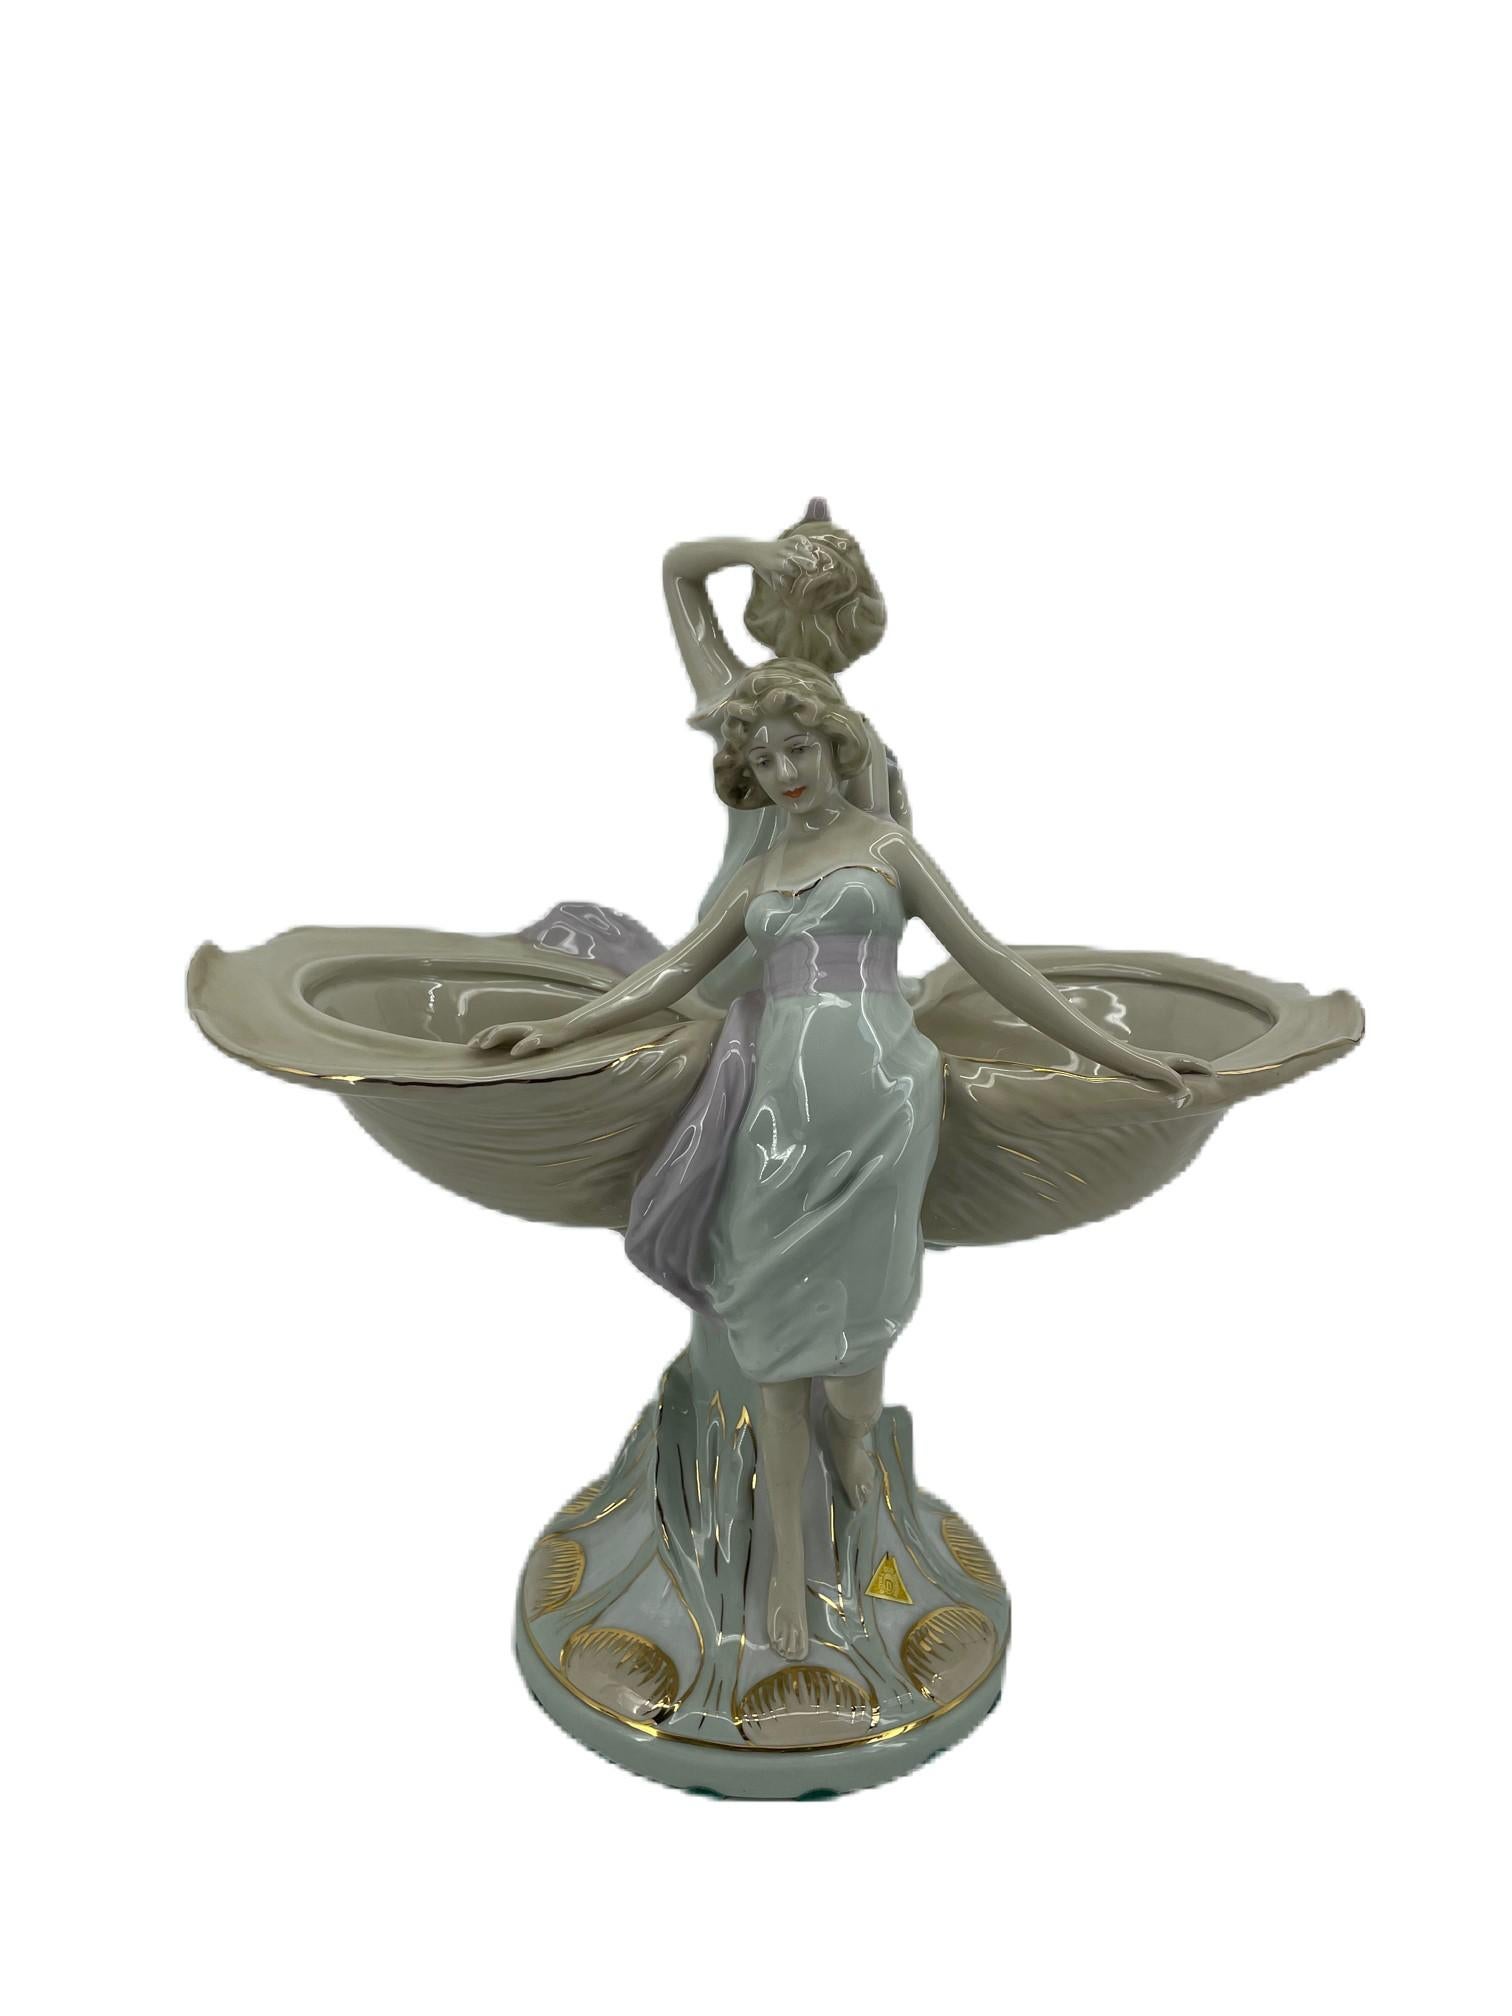 Königliche Dux-Figur
Handbemalte, beeindruckende Porzellanfigur in Form von zwei muschelförmigen Schalen, die von zwei Jungfrauen überragt werden. Die Figur steht auf einem rustikalen, ausladenden Sockel in glänzenden Pastellfarben, vorwiegend in